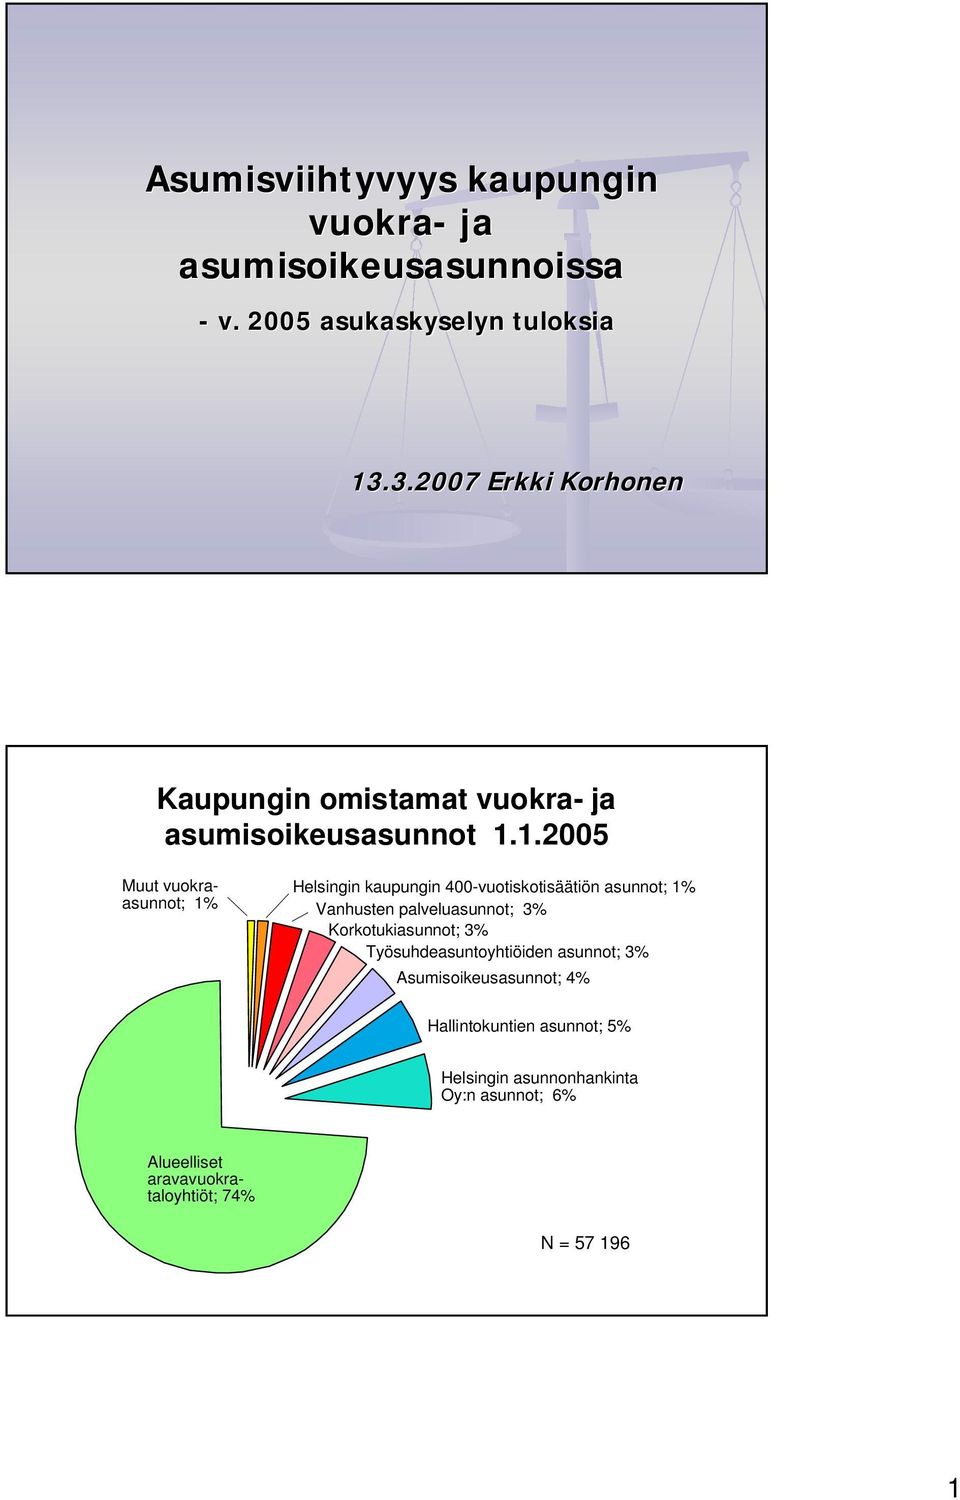 1.2005 Muut vuokraasunnot; 1% Helsingin kaupungin 400-vuotiskotisäätiön asunnot; 1% Vanhusten palveluasunnot; 3%